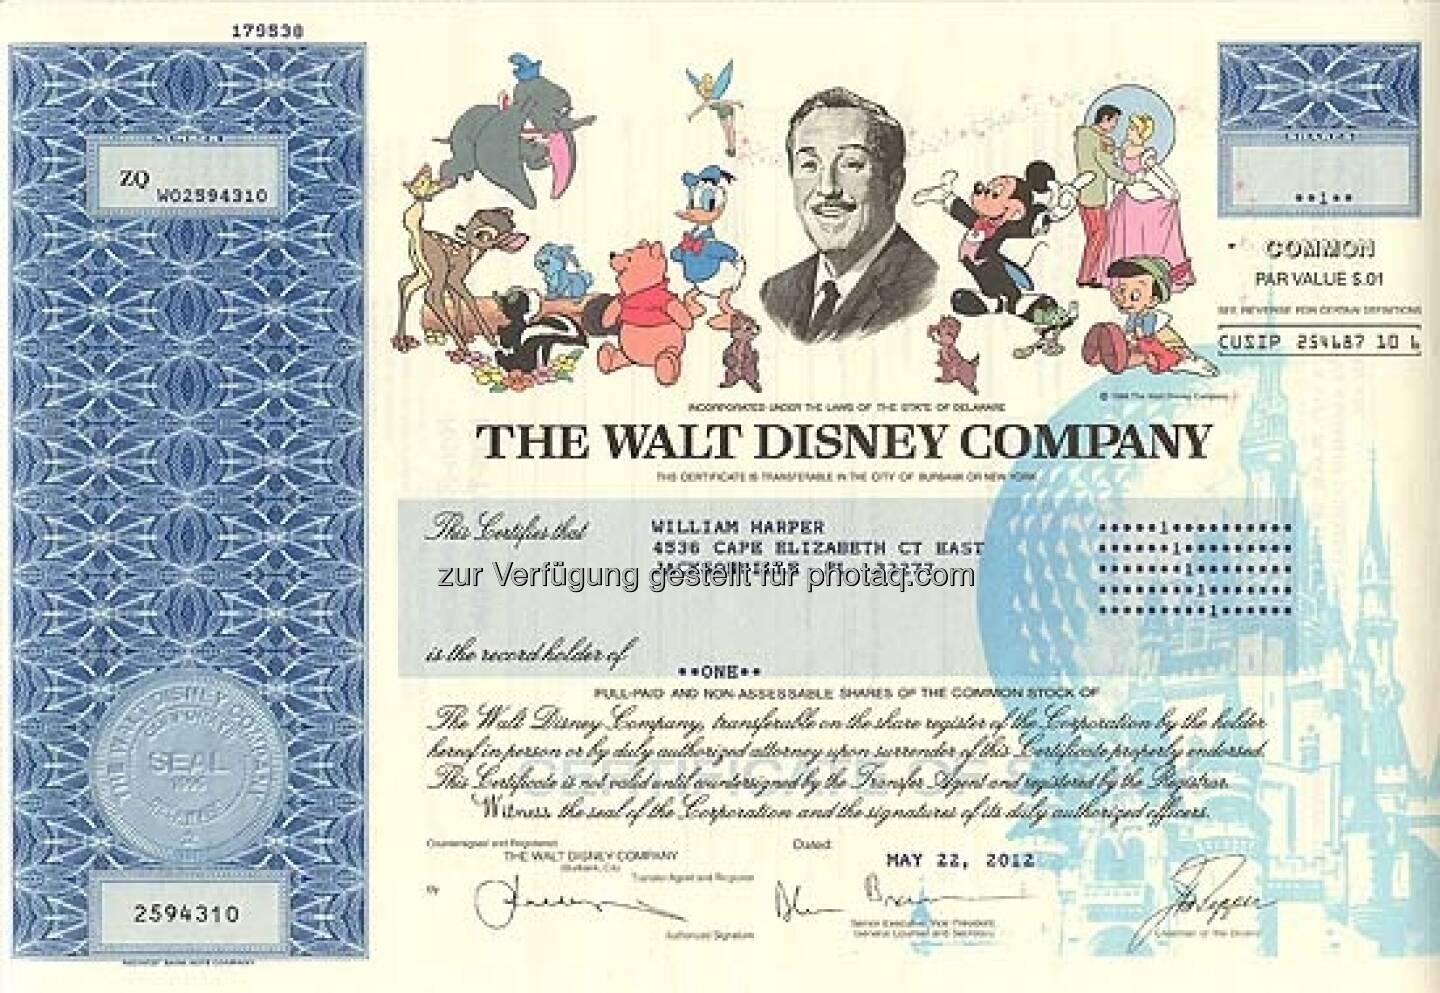 Walt Disney: Der Medienkonzern wurde 1923 von den Brüdern Walt und Roy Disney als Disney Brothers Cartoon Studio gegründet und verdankt seinen Erfolg Mickey Maus & Co. Seit 1986 nennt sich das Unternehmen The Walt Disney Company. Die ungültige Aktie stammt von 2012.